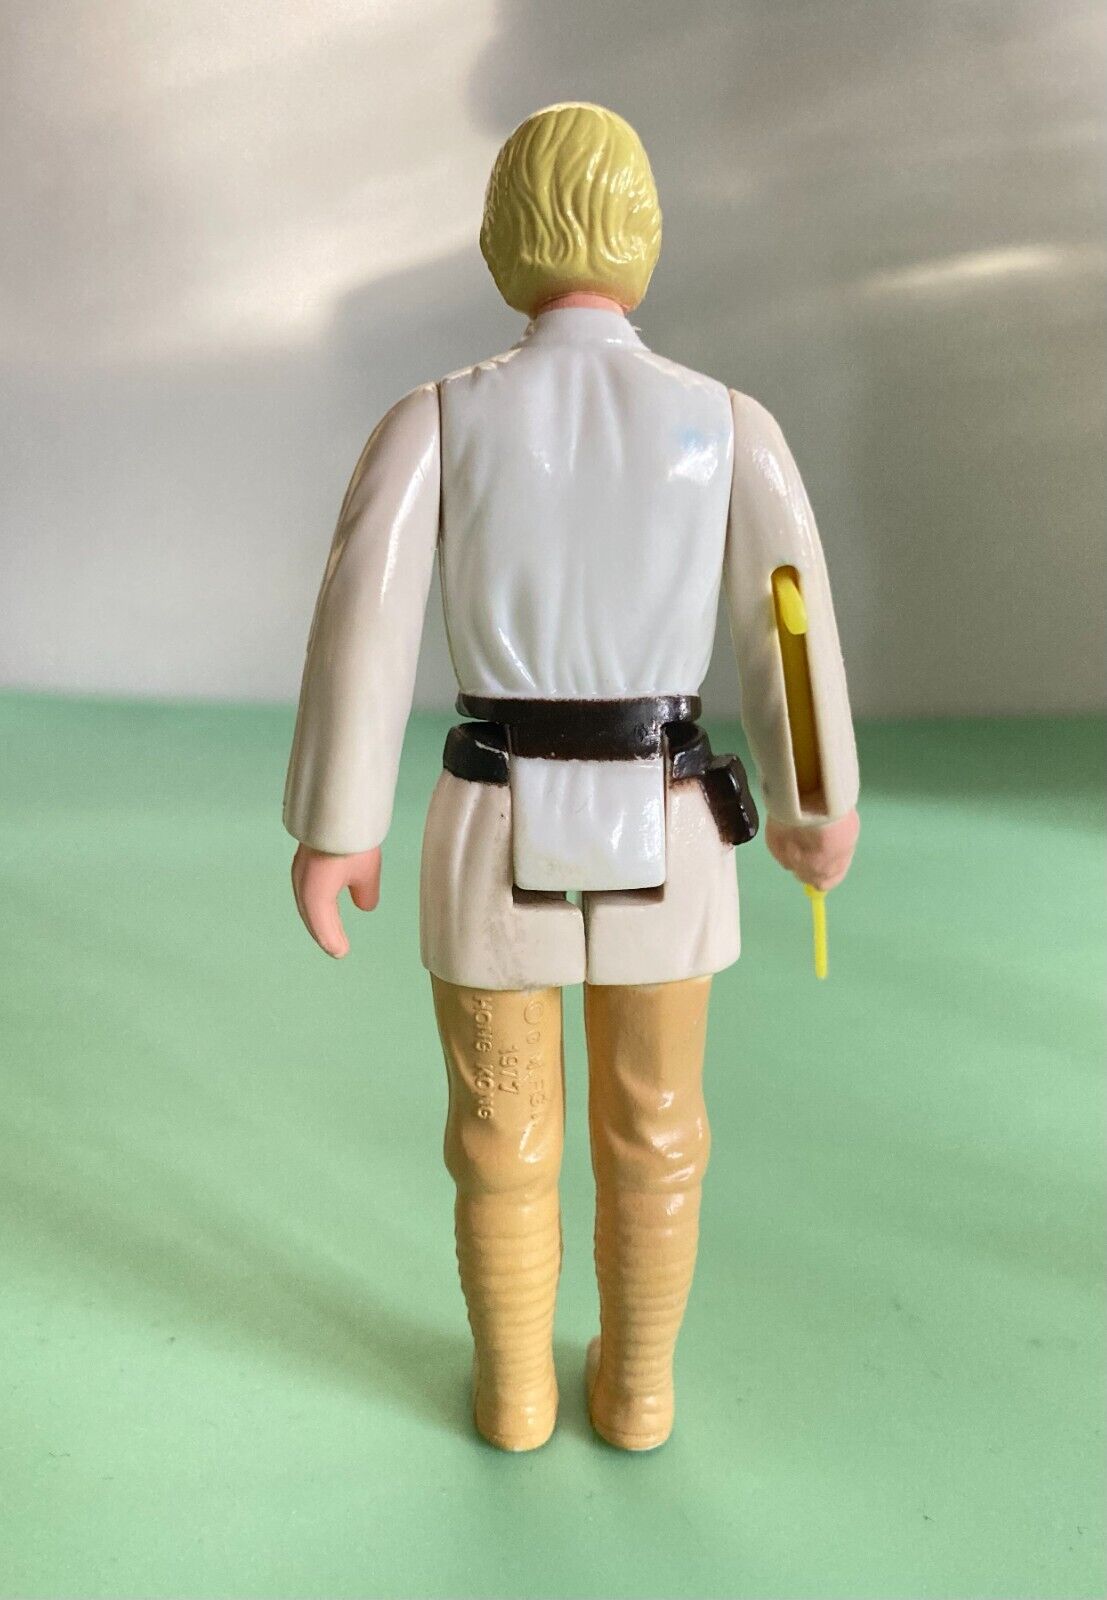 Luke Skywalker sold